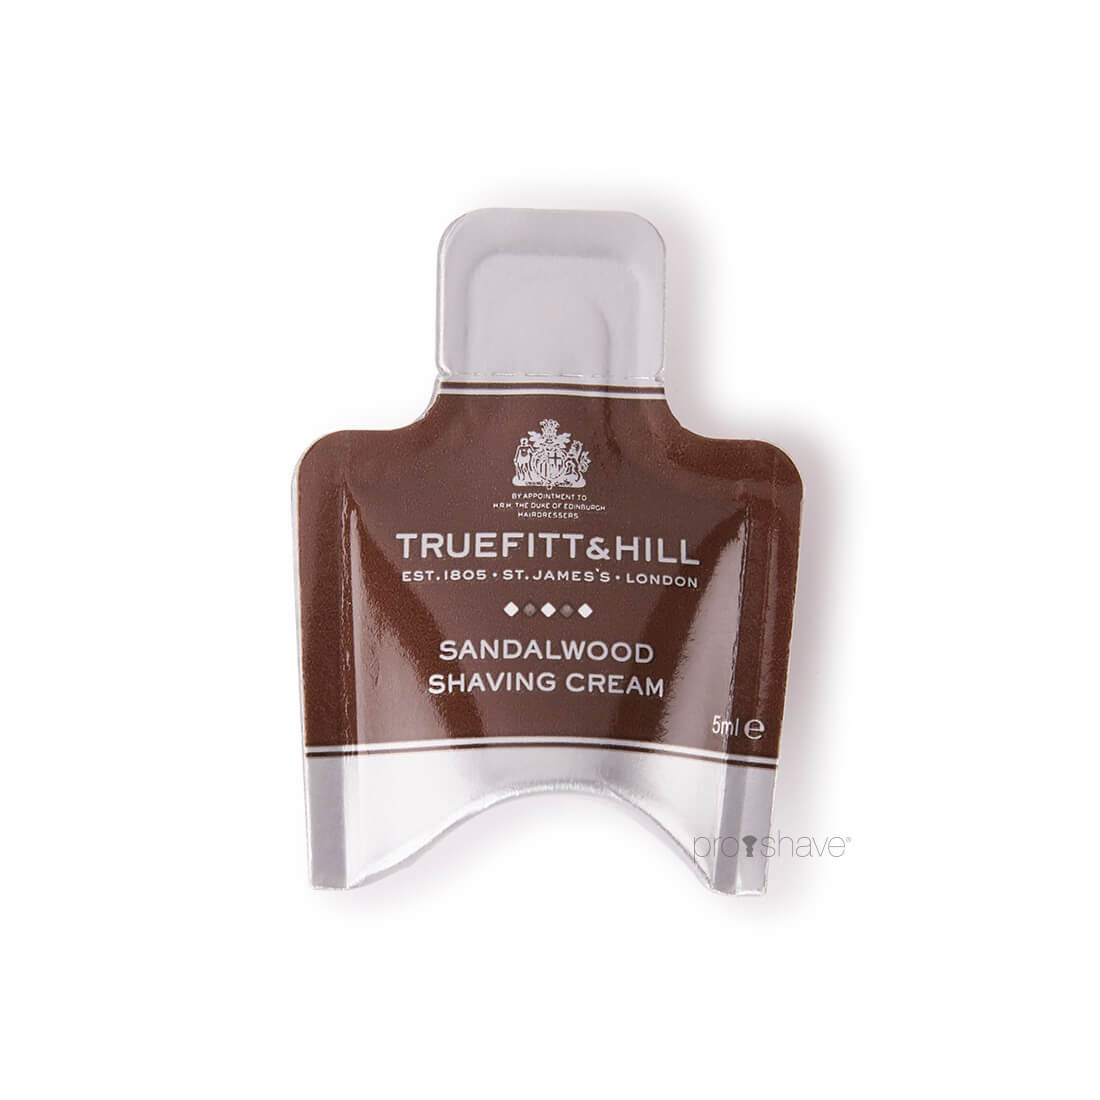 17: Truefitt & Hill Sandalwood Shaving Cream Sample Pack, 5 ml.